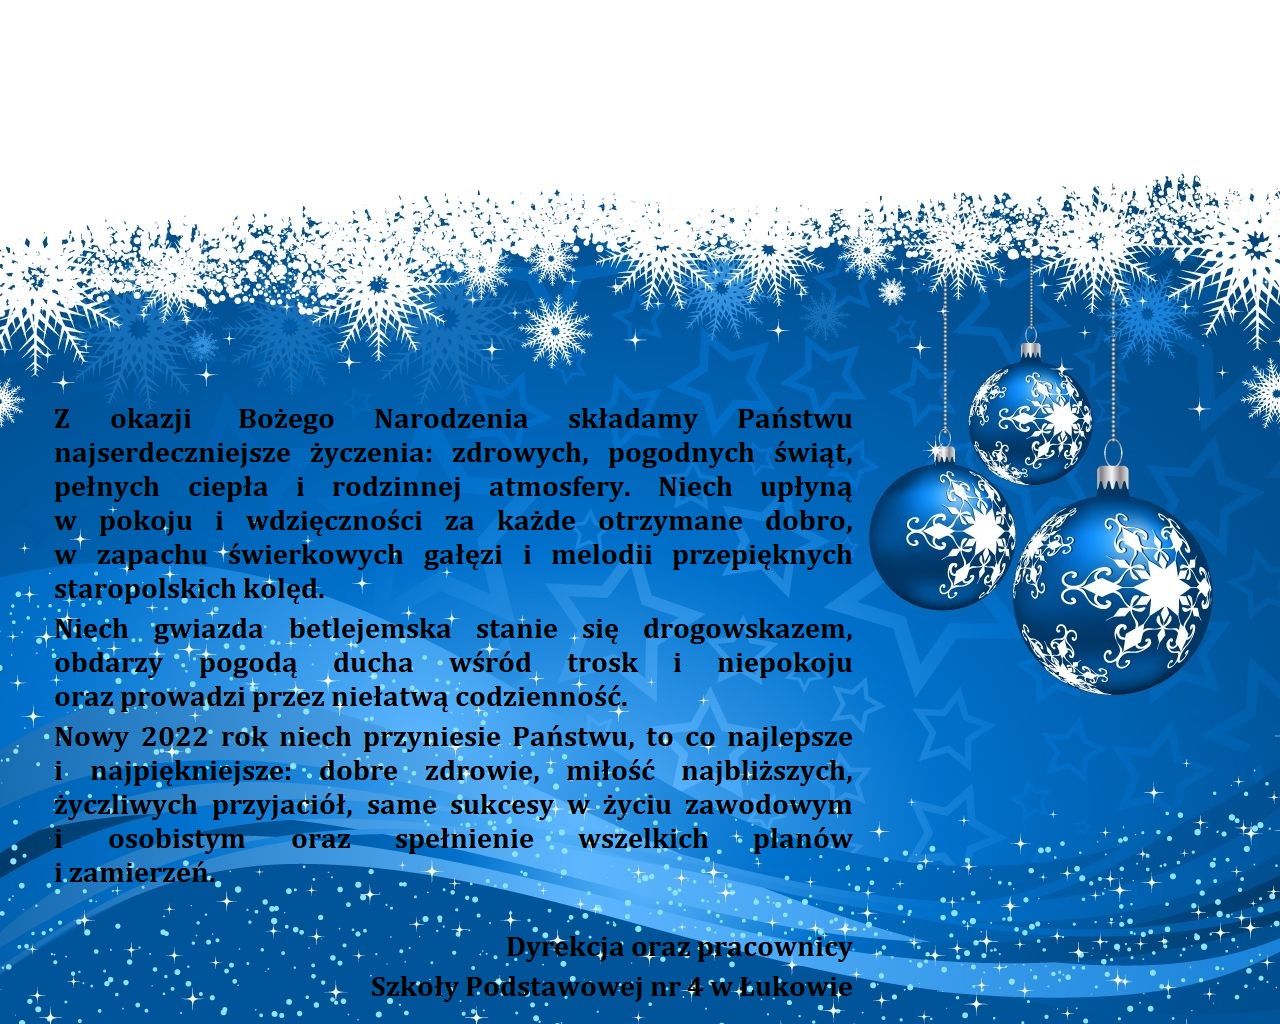 Z okazji Bożego Narodzenia składamy Państwu najserdeczniejsze życzenia: zdrowych, pogodnych świąt, pełnych ciepła i rodzinnej atmosfery. Niech upłyną w pokoju i wdzięczności za każde otrzymane dobro, w zapachu świerkowych gałęzi i melodii przepięknych staropolskich kolęd. Niech gwiazda betlejemska stanie się drogowskazem, obdarzy pogodą wśród trosk i niepokoju oraz prowadzi przez niełatwą codzienność.  Nowy 2022 rok niech przyniesie Państwu, to co najlepsze i najpiękniejsze: dobre zdrowie, miłość najbliższych, życzliwych przyjaciół, same sukcesy w życiu zawodowym i osobistym oraz spełnienia wszelkich planów i zamierzeń. Dyrekcja oraz pracownicy Szkoły Podstawowej nr 4 w Łukowie